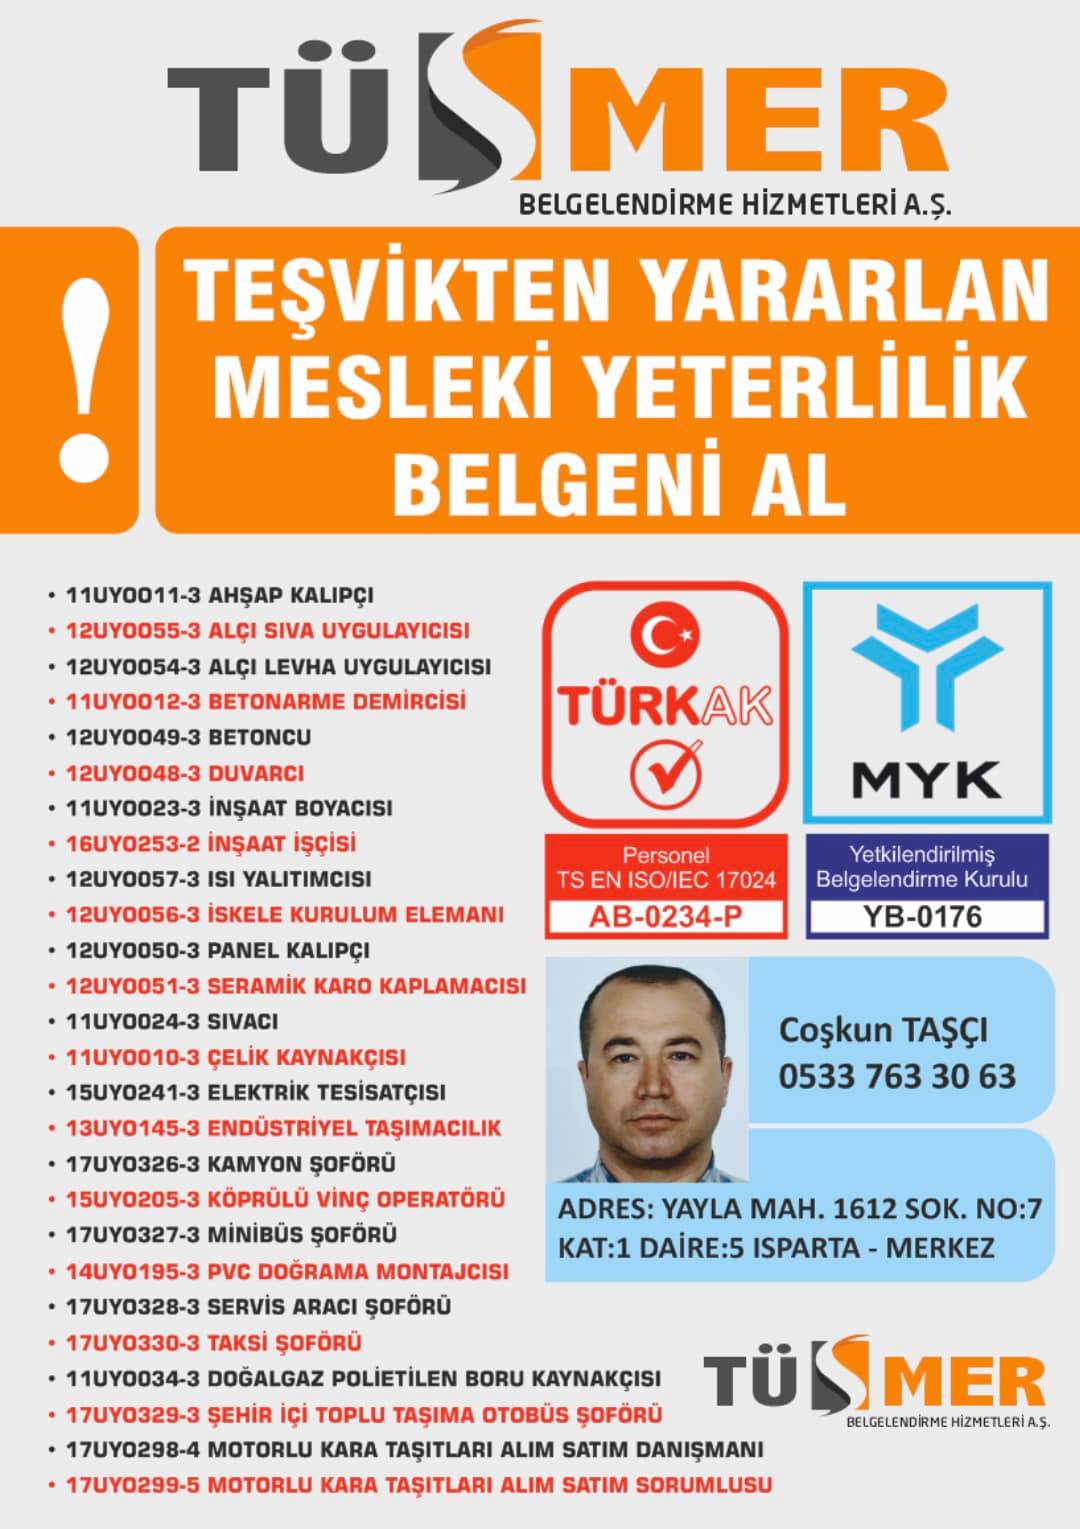 MYK MESLEKİ YETERLİLİK BELGESİ Yenidoğan Bayrampaşa İstanbul